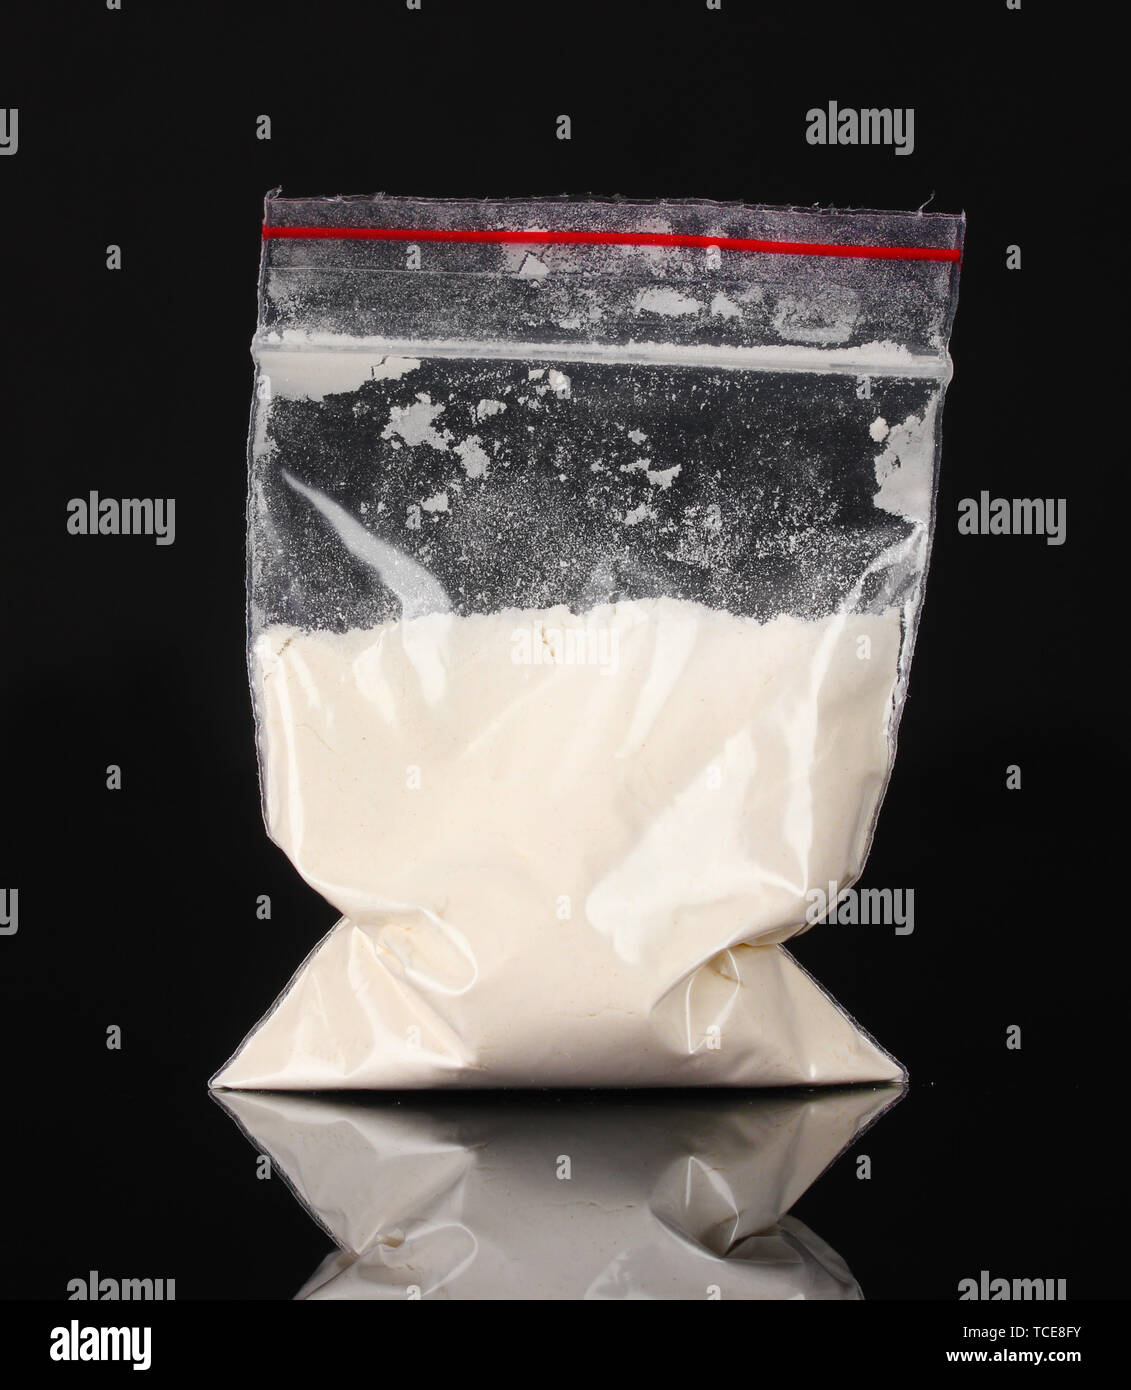 La cocaina in confezione su sfondo nero Foto Stock